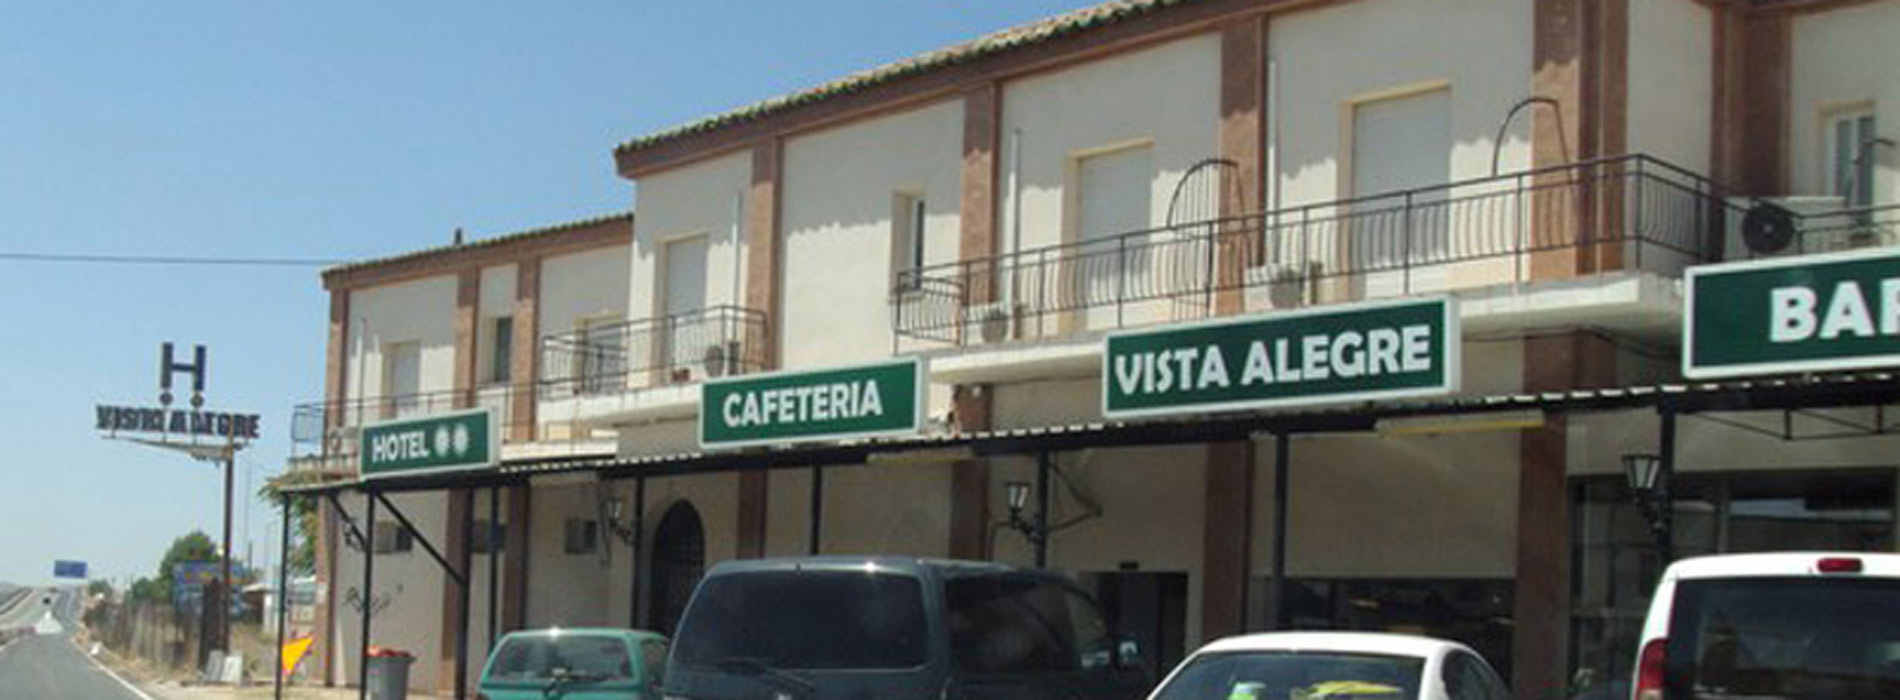 Nuevo Hotel Vista Alegre  galeria